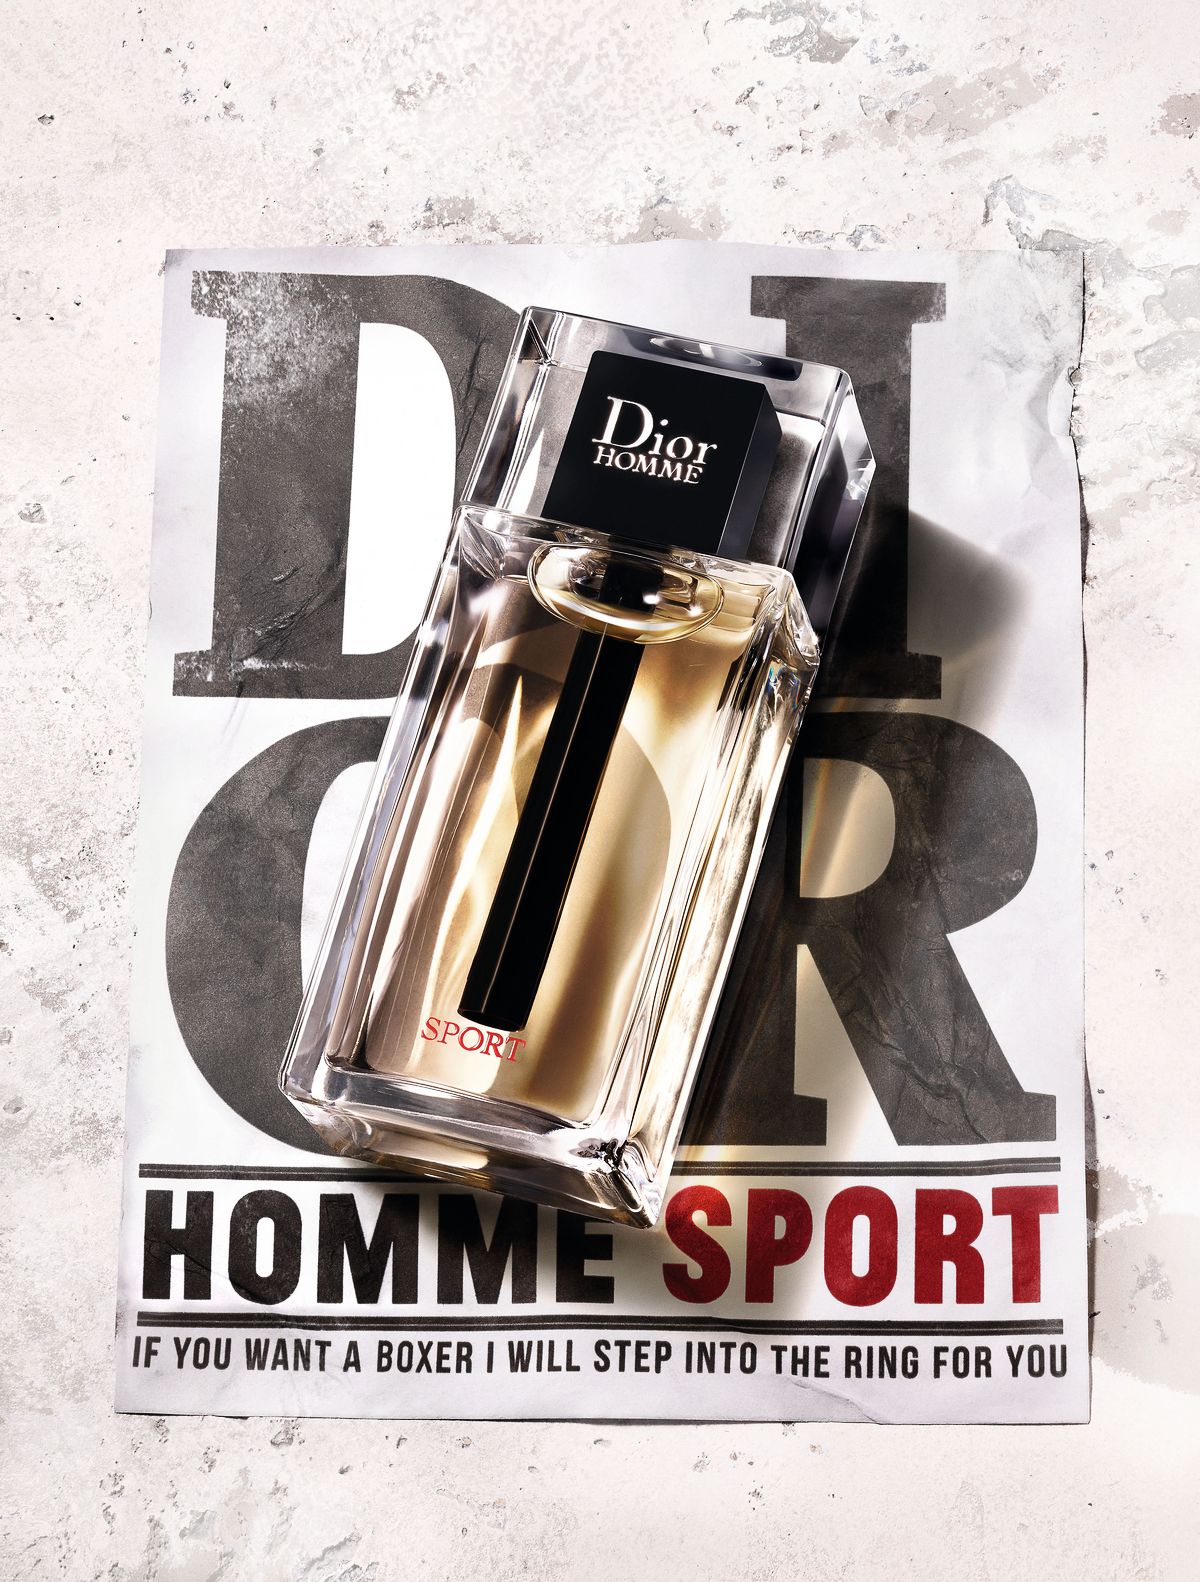 Для нового Dior Homme Sport Ким Джонс создал эксклюзивные боксерские перчатки, фото 1